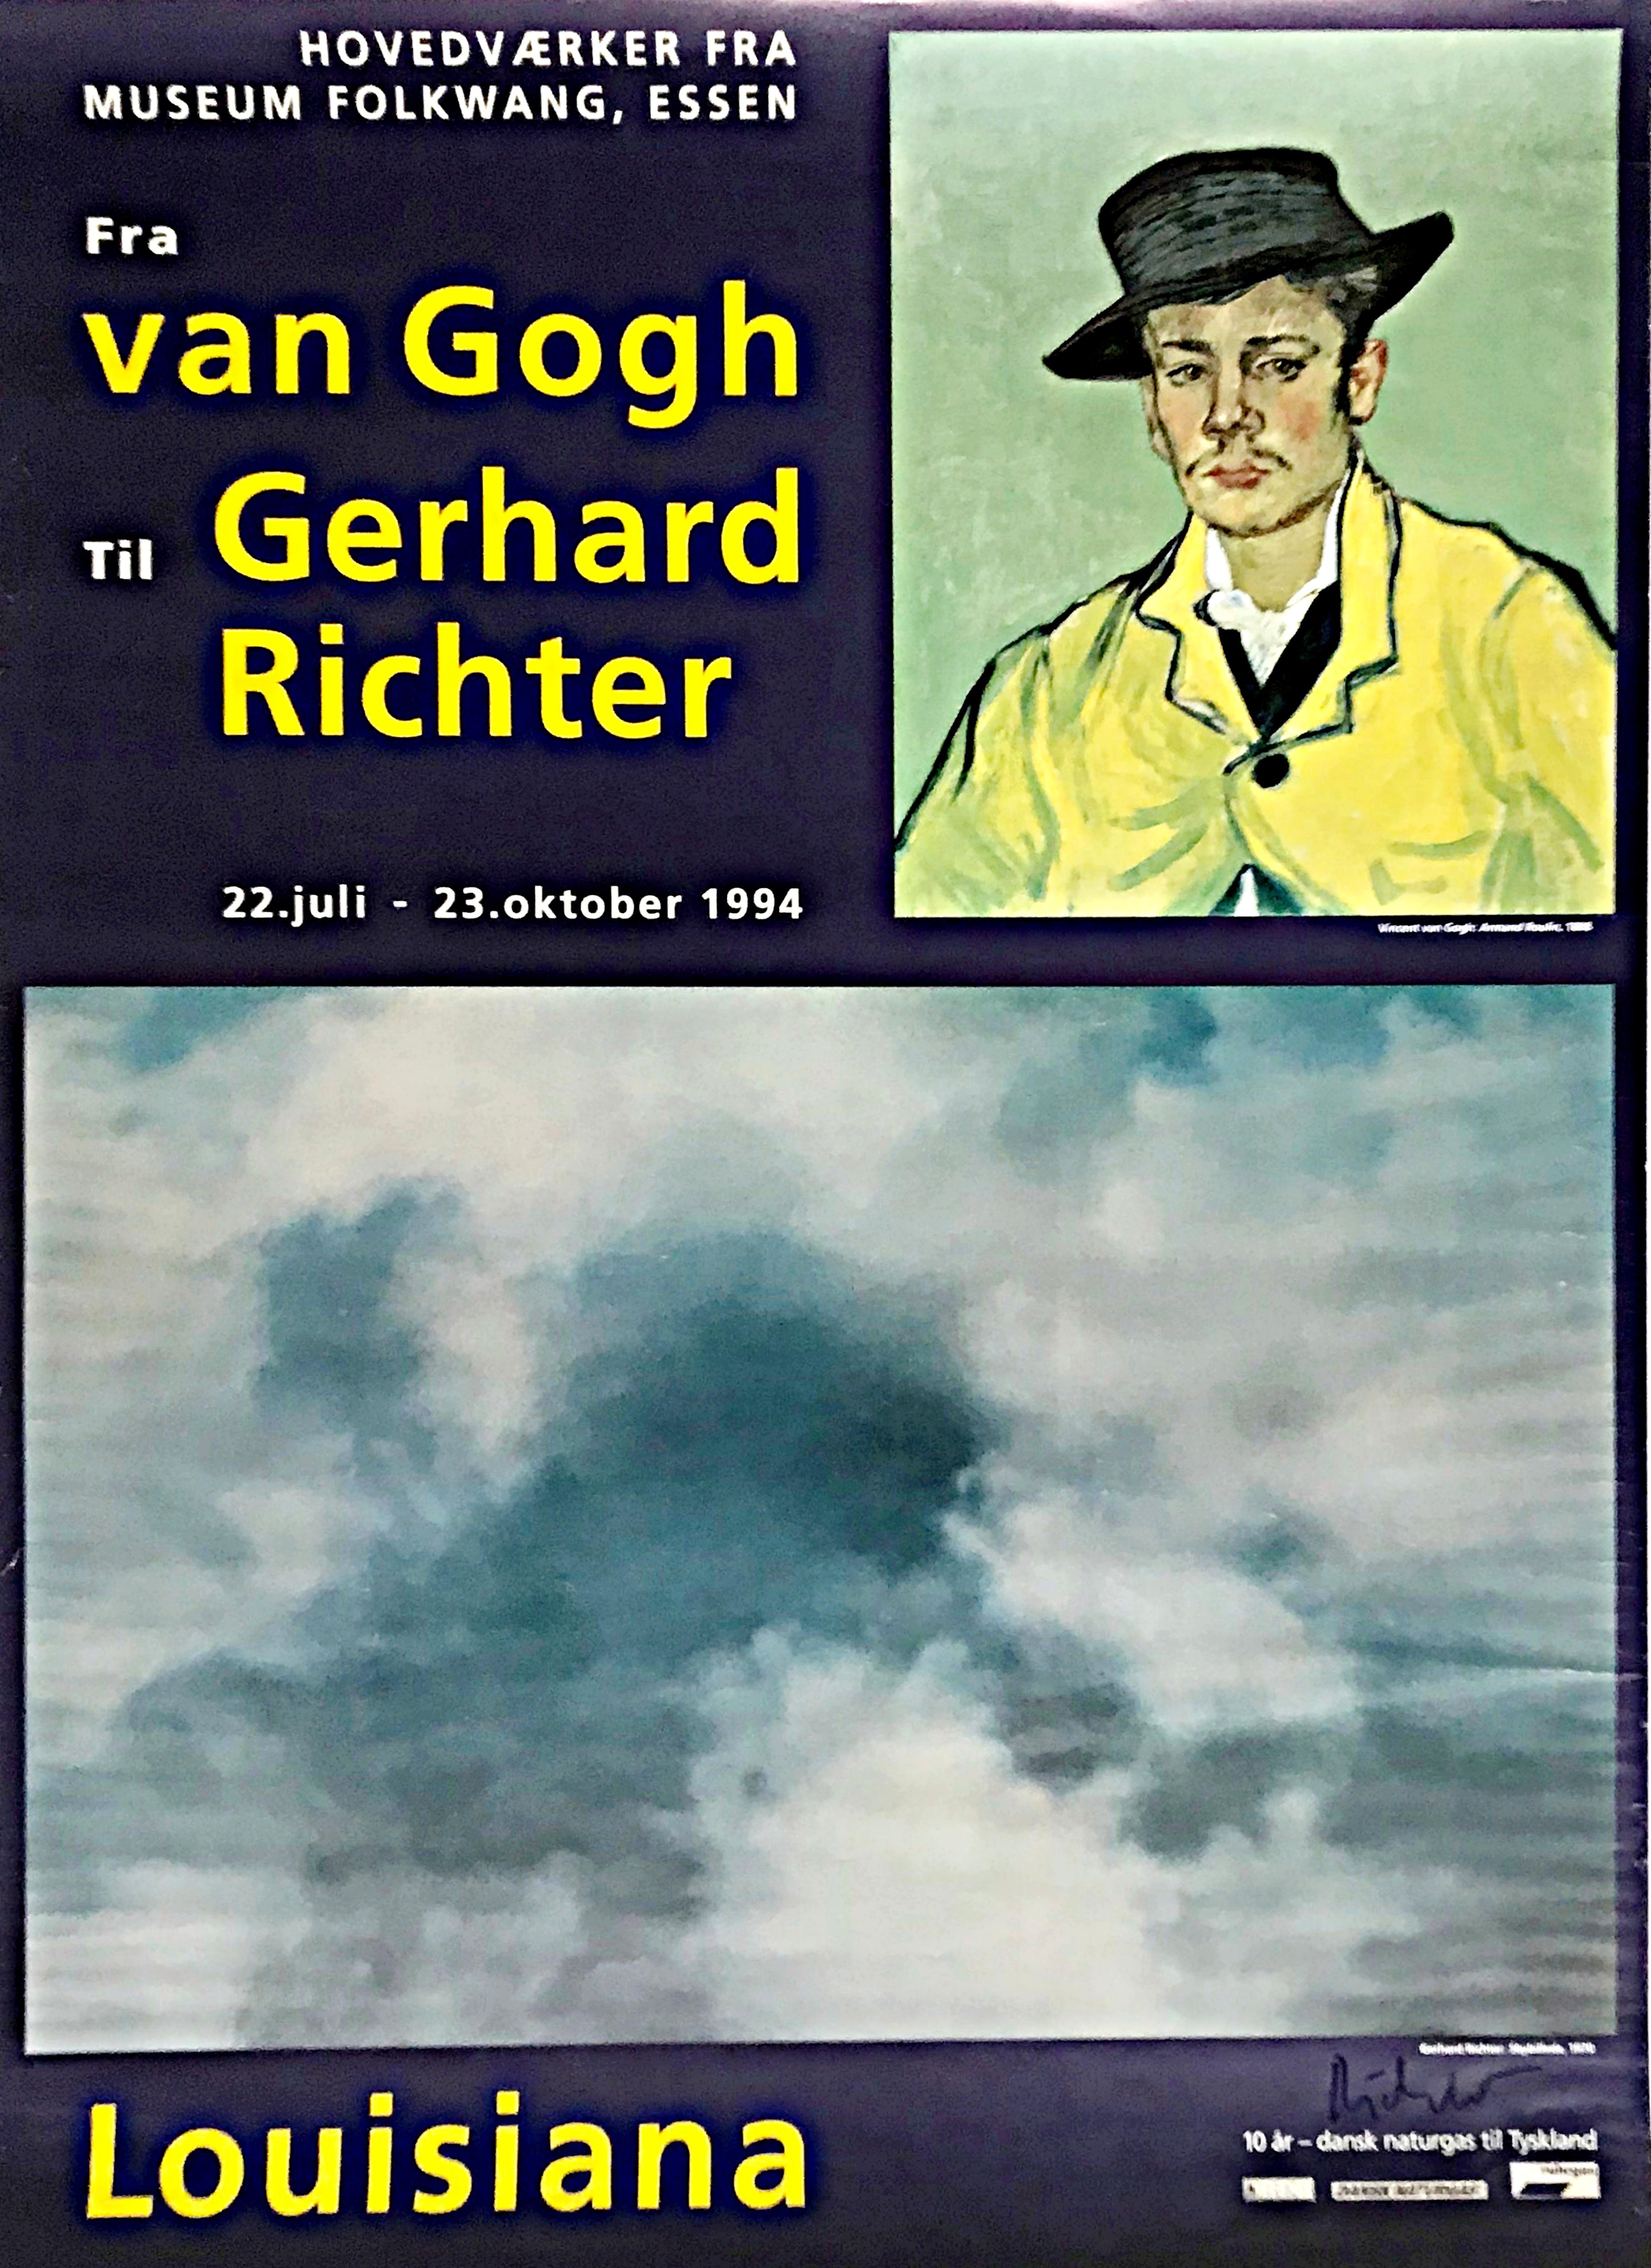 Gerhard Richter
Fra van Gogh Til Gerhard Richter (Von Van Gogh zu Gerhard Richter) - Handsigniert von Gerhard Richter, 1994
Offsetlithographie (handsigniert)
Handsigniert in schwarzem Marker von Gerhard Richter rechts unten; nicht nummeriert
34 × 24